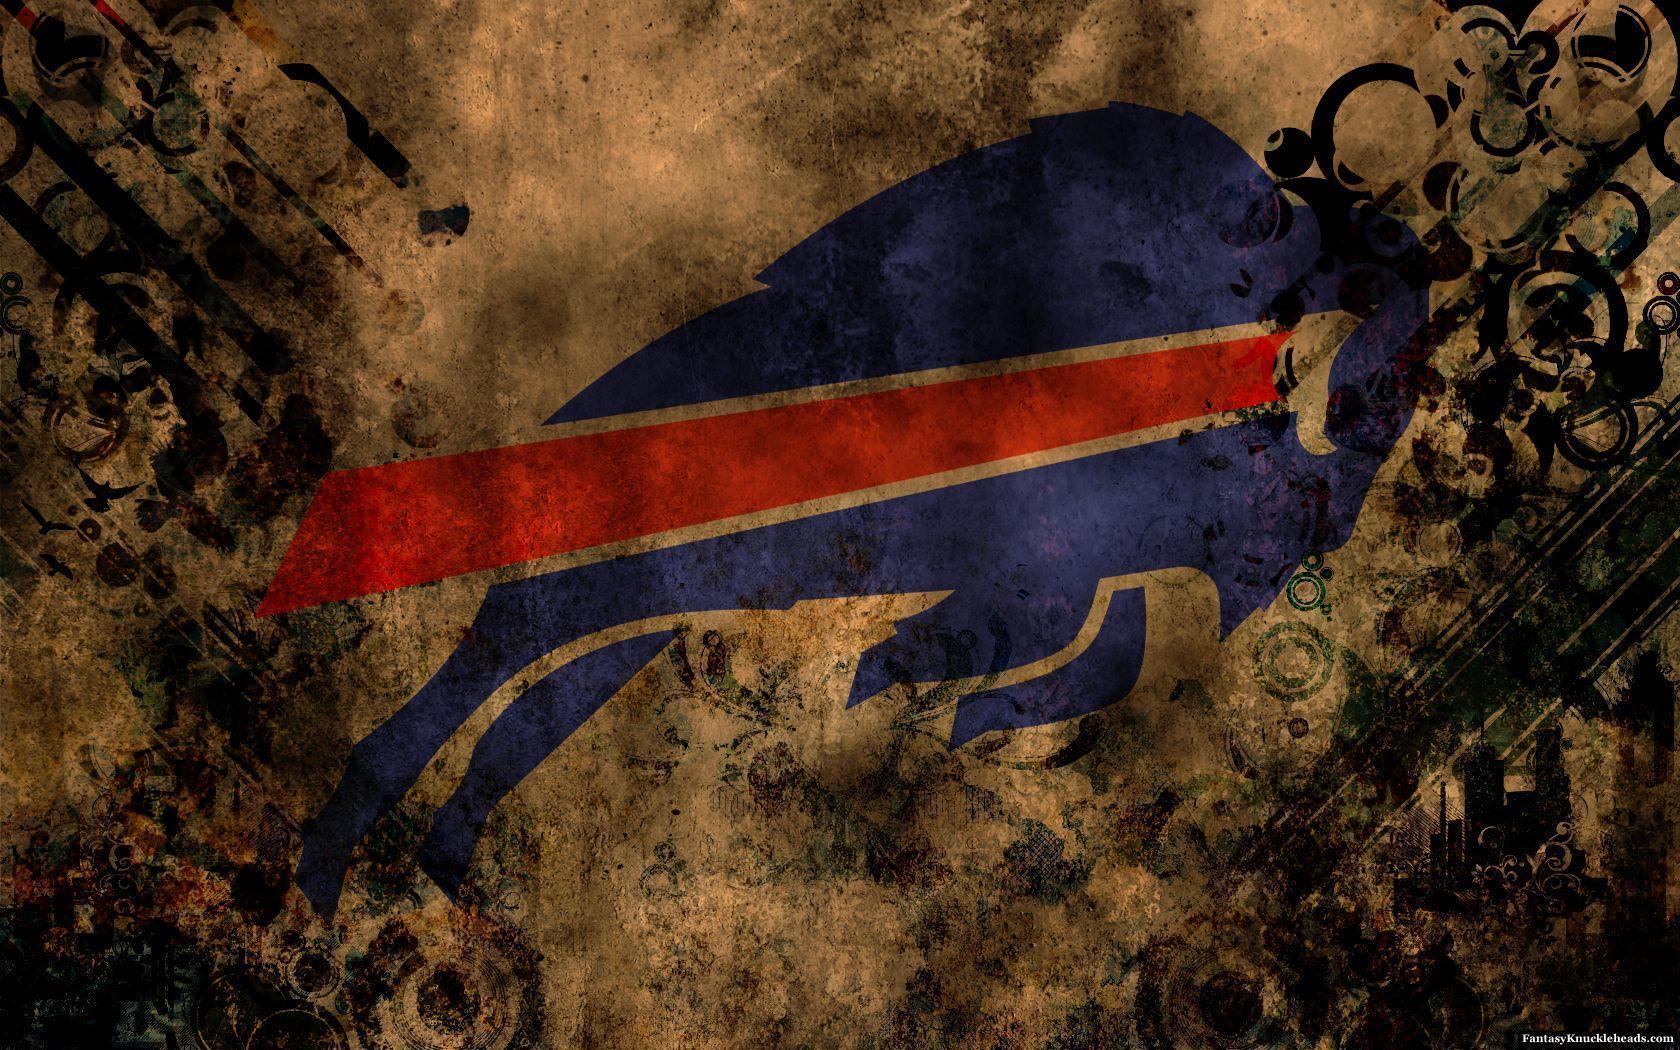 HQ Buffalo Bills Wallpaper. Full HD Picture